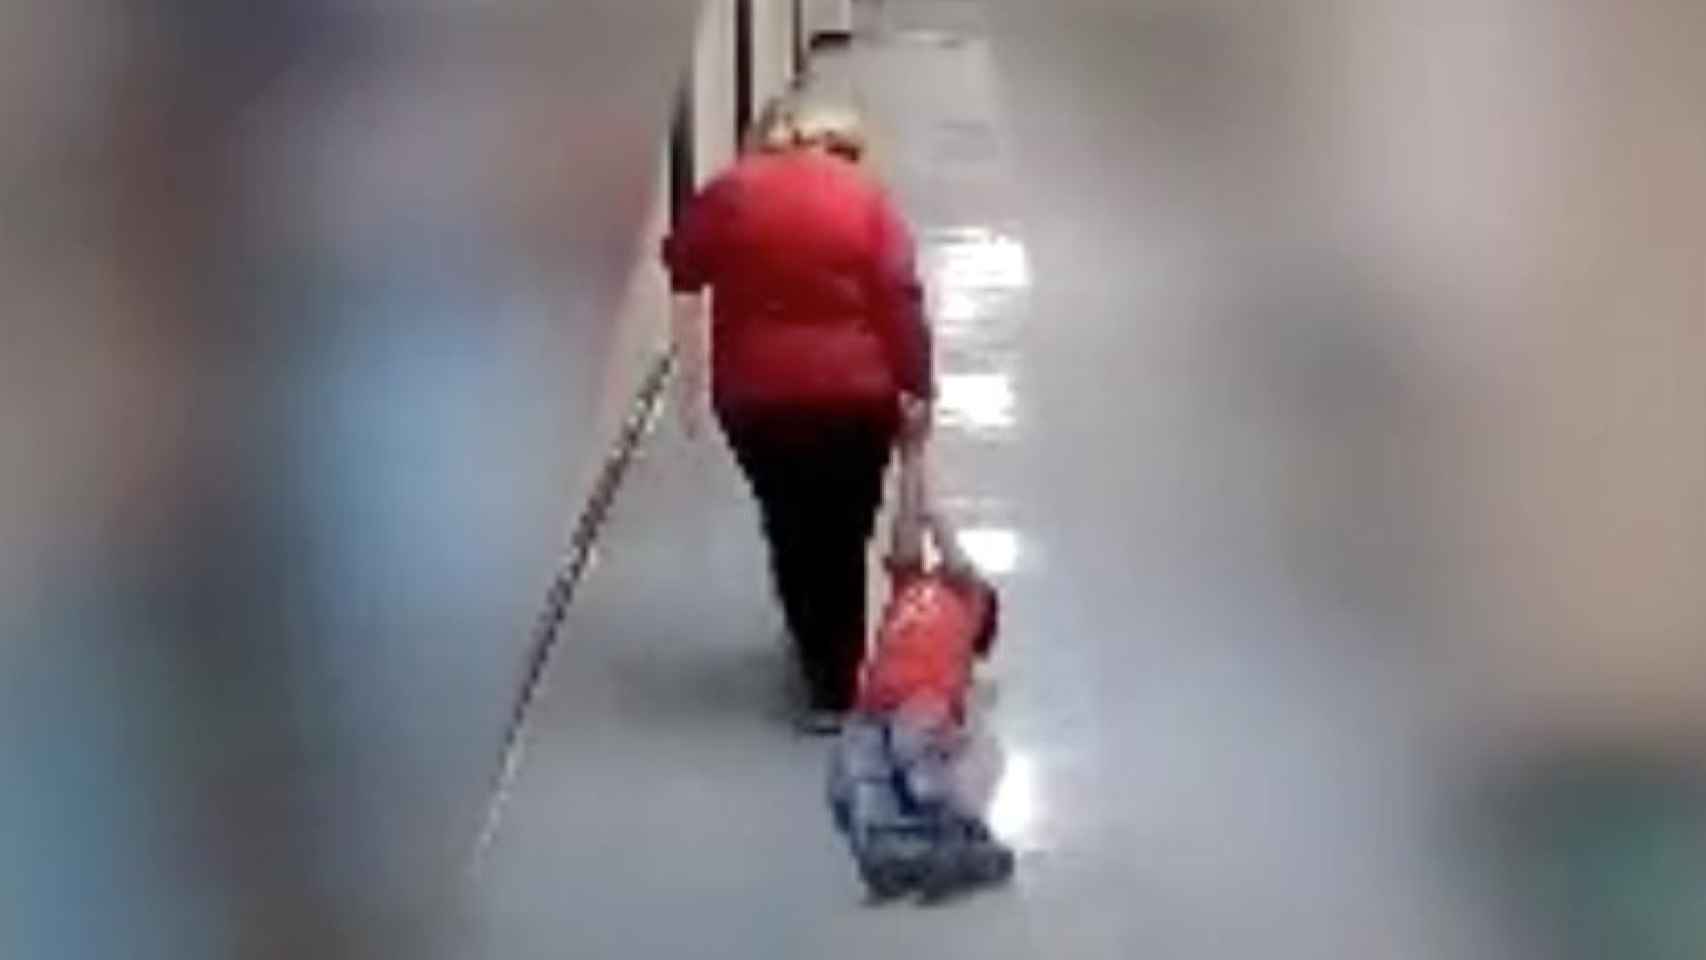 Una profesora arrastra por los suelos a un niño con autismo